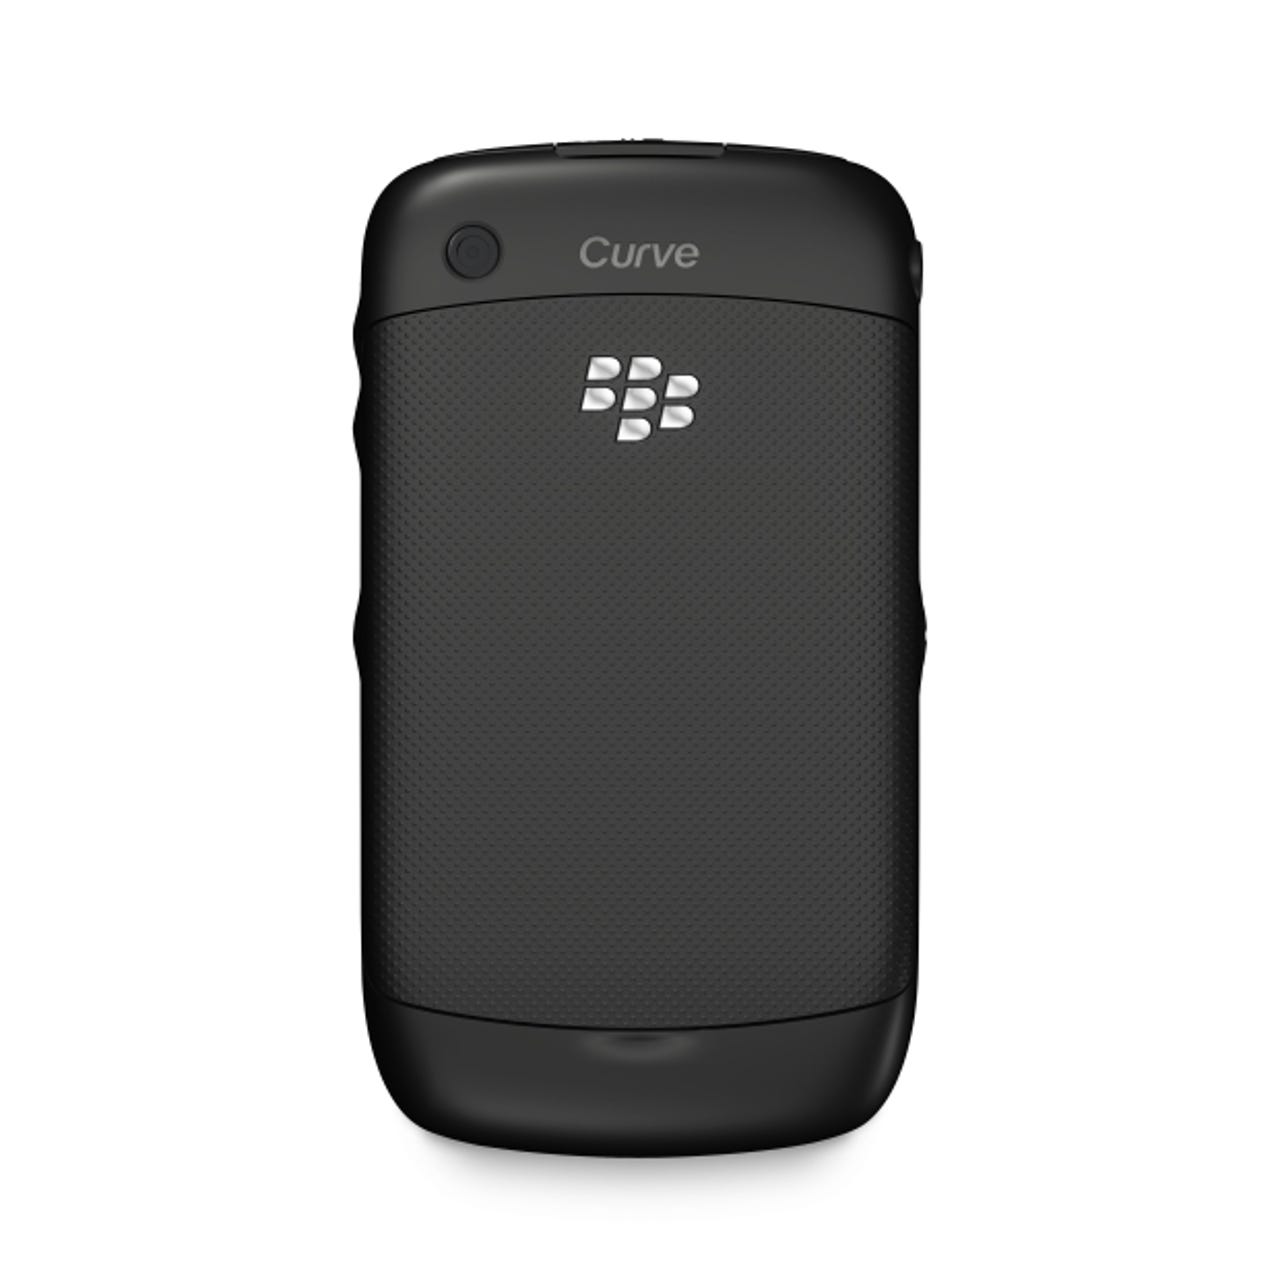 blackberrycurve3g2.jpg